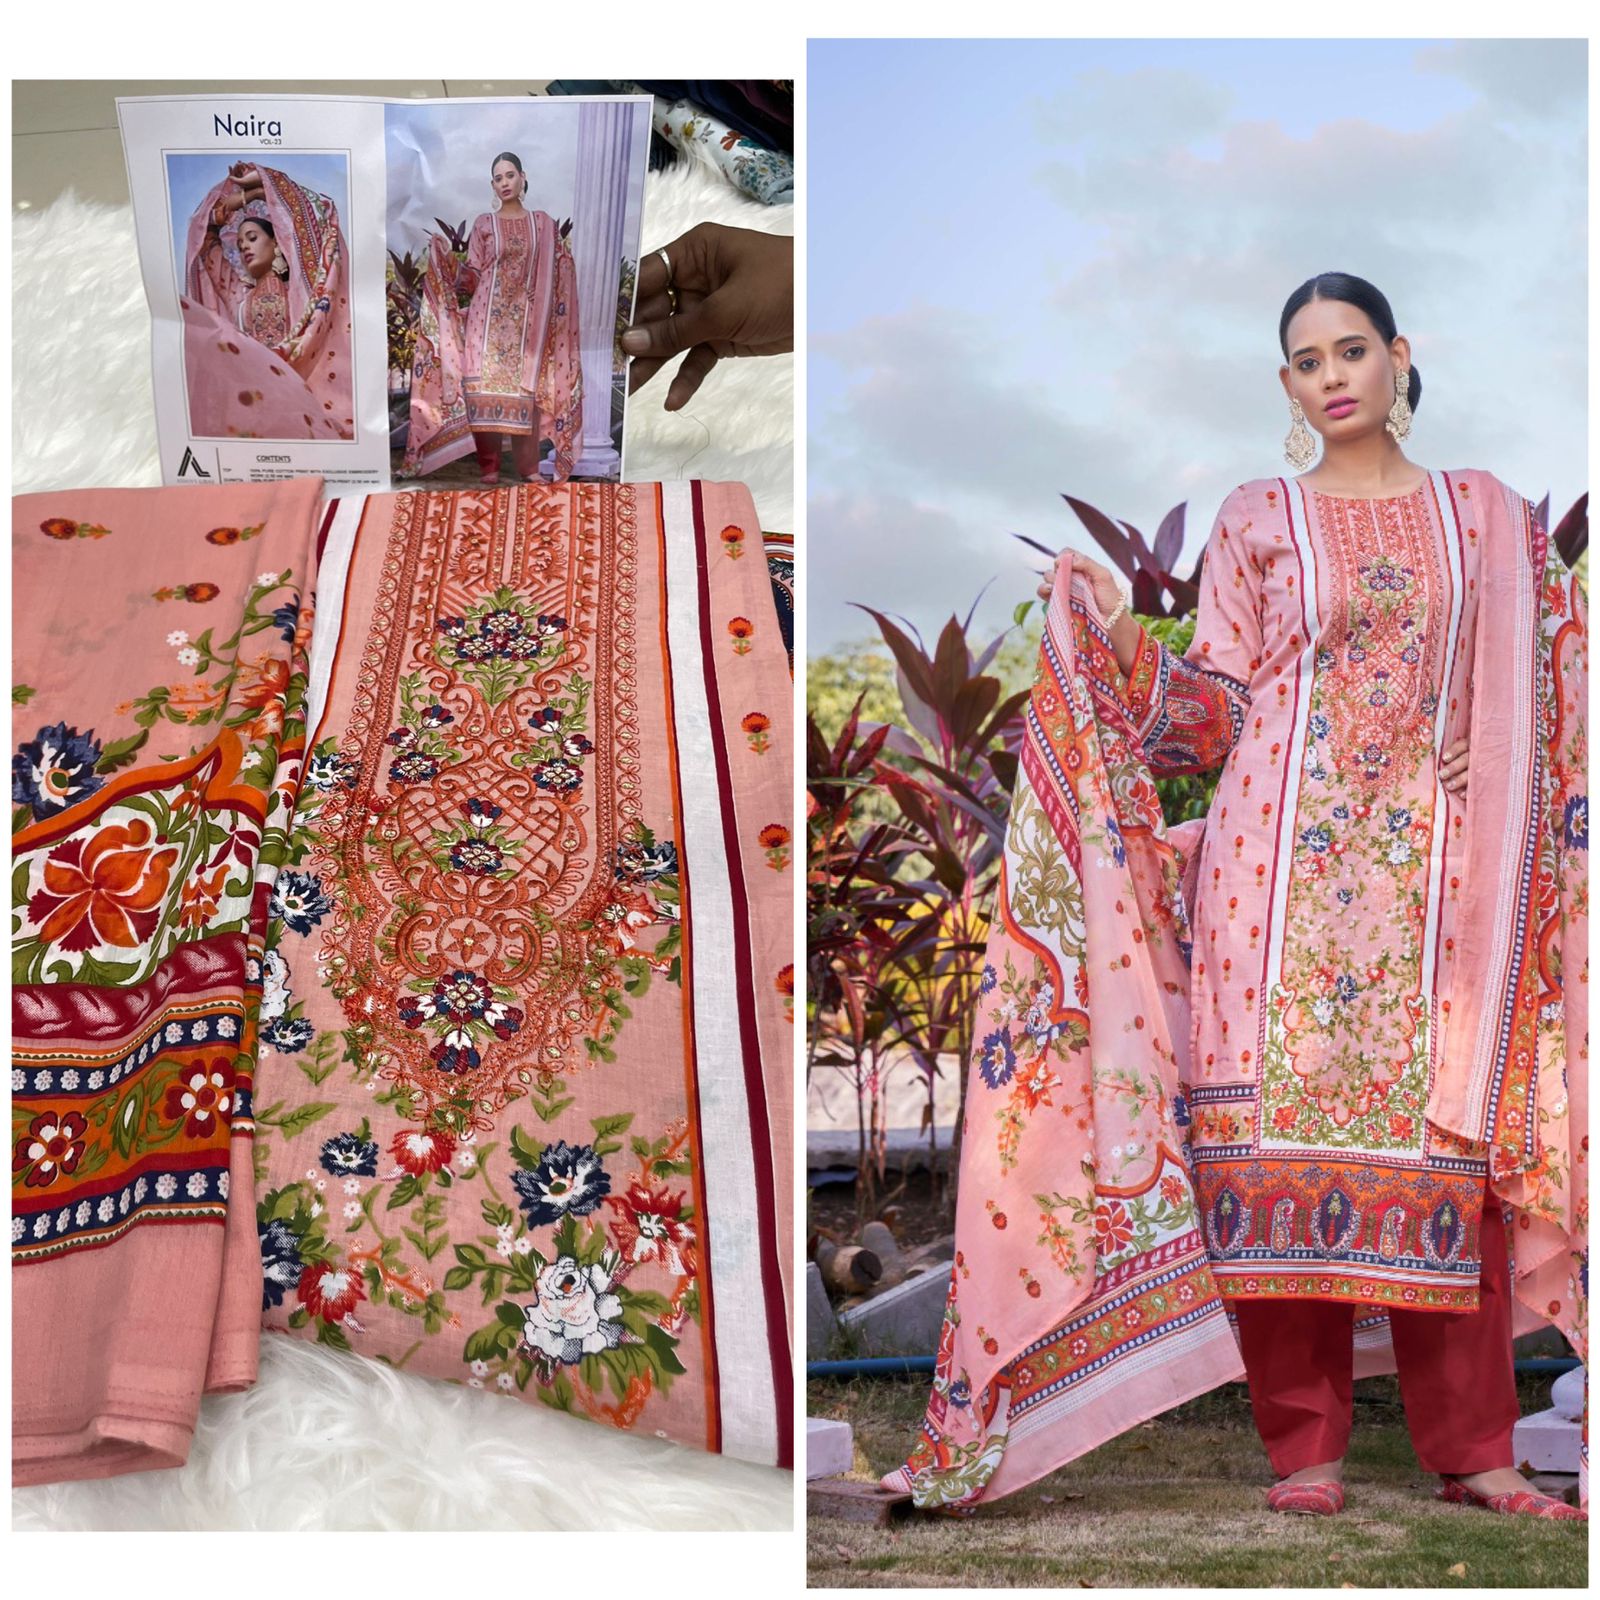 Naira Vol 23 Adans Libas Cotton Karachi Salwar Suits